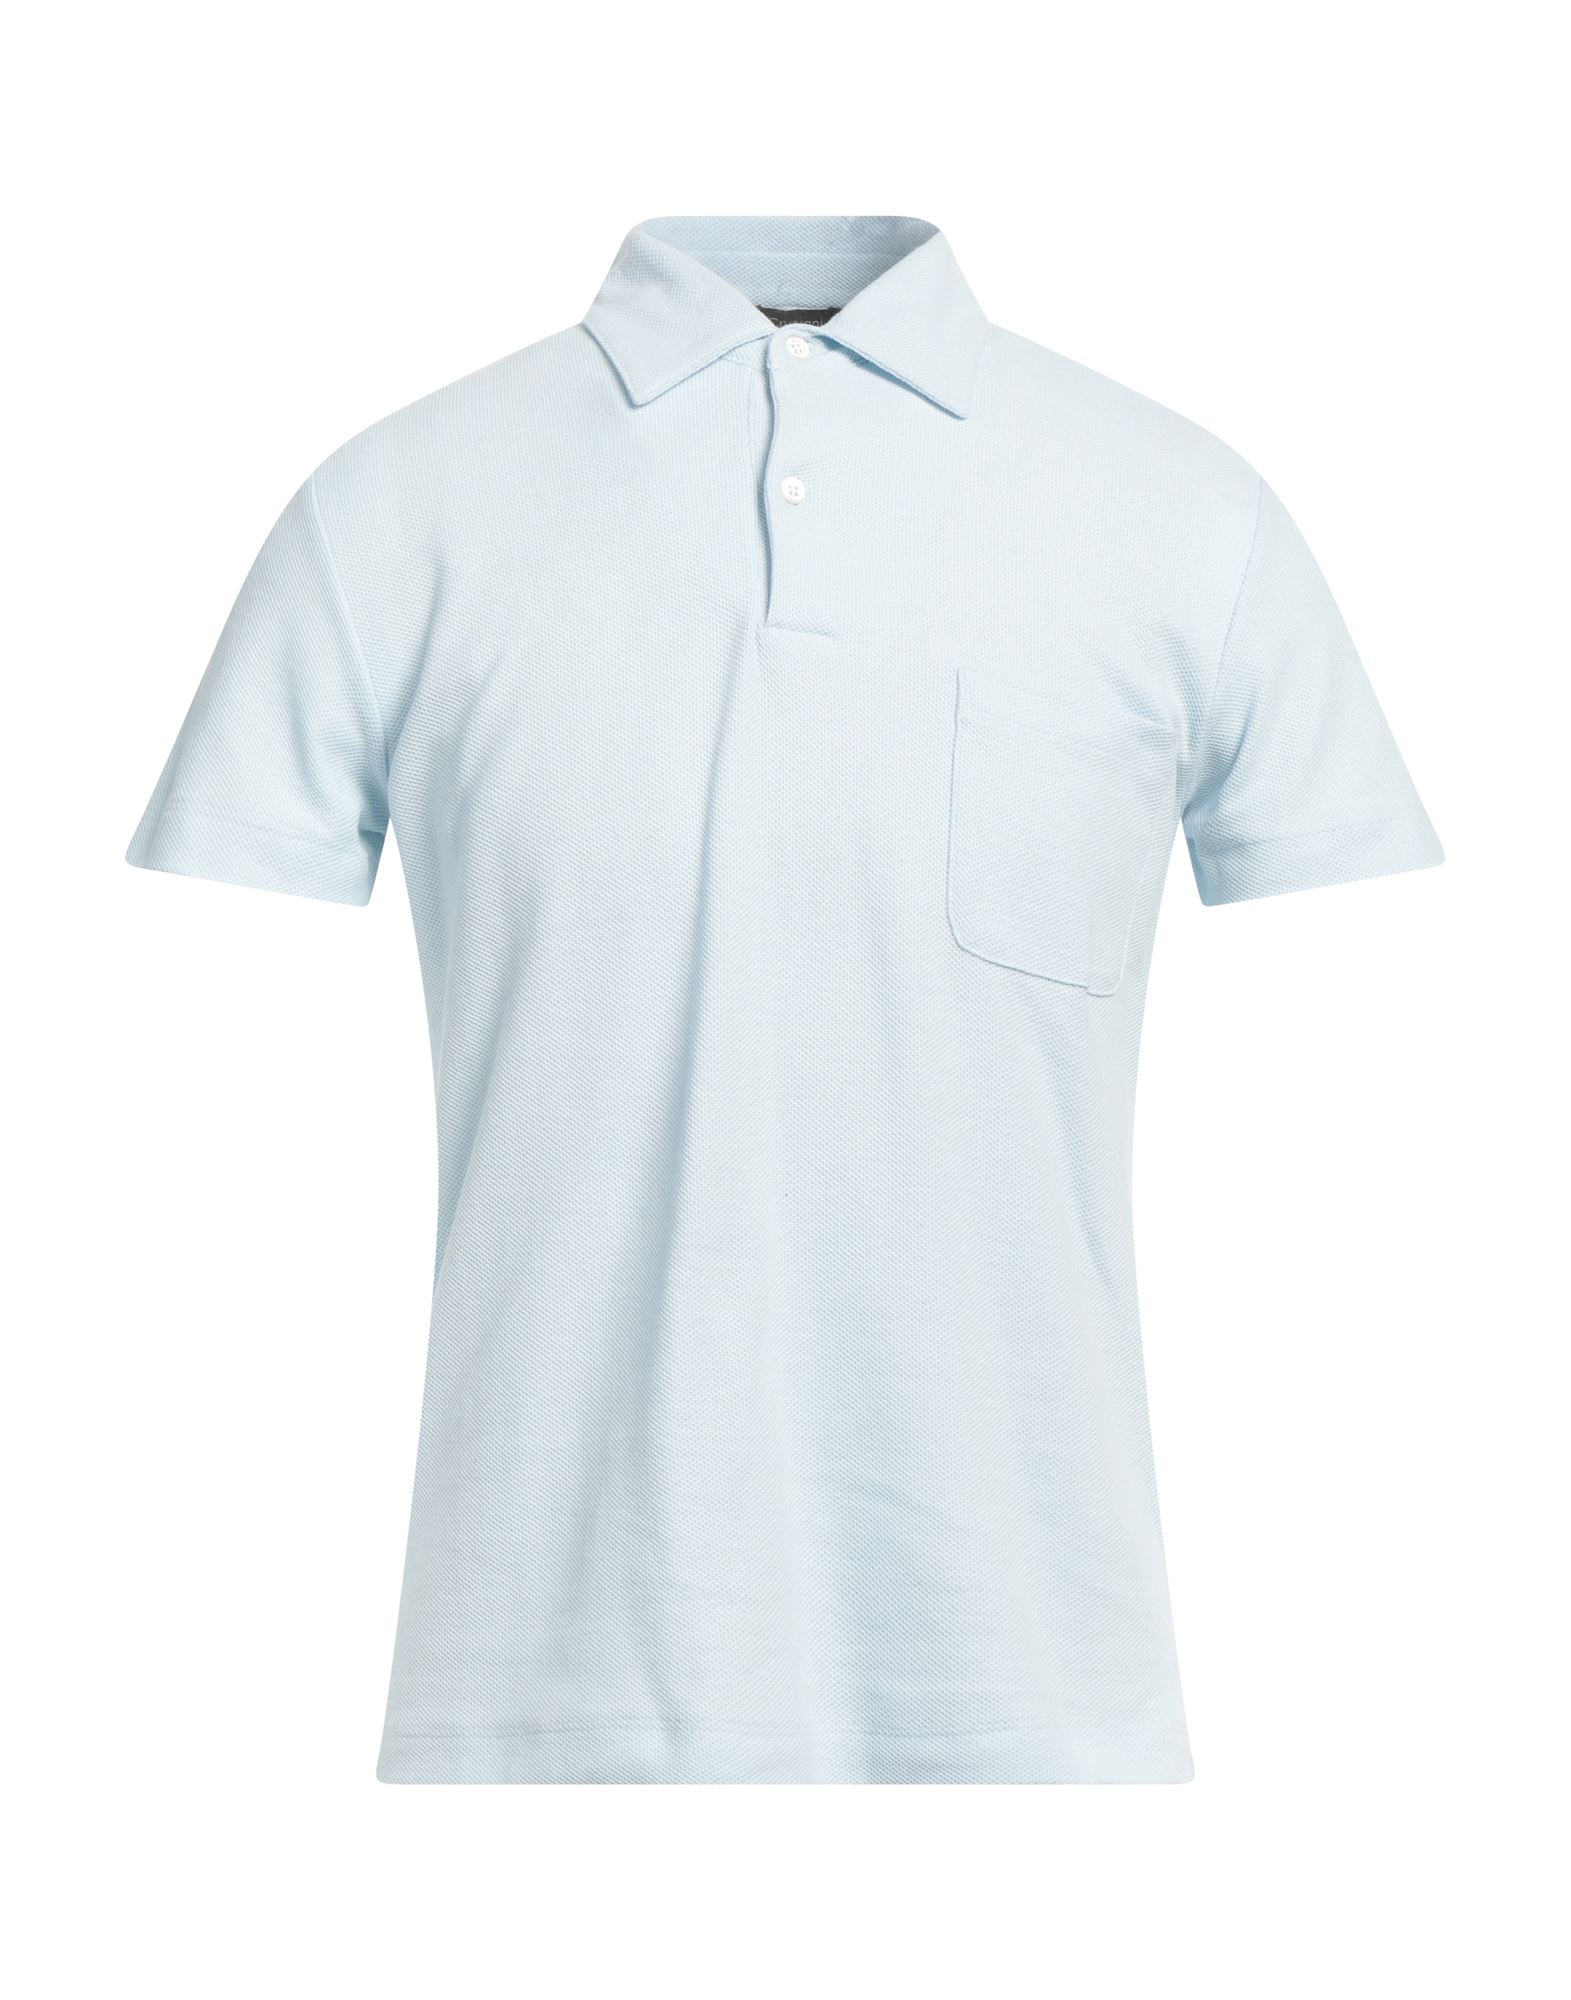 クルチアーニ(Cruciani) メンズポロシャツ | 通販・人気ランキング